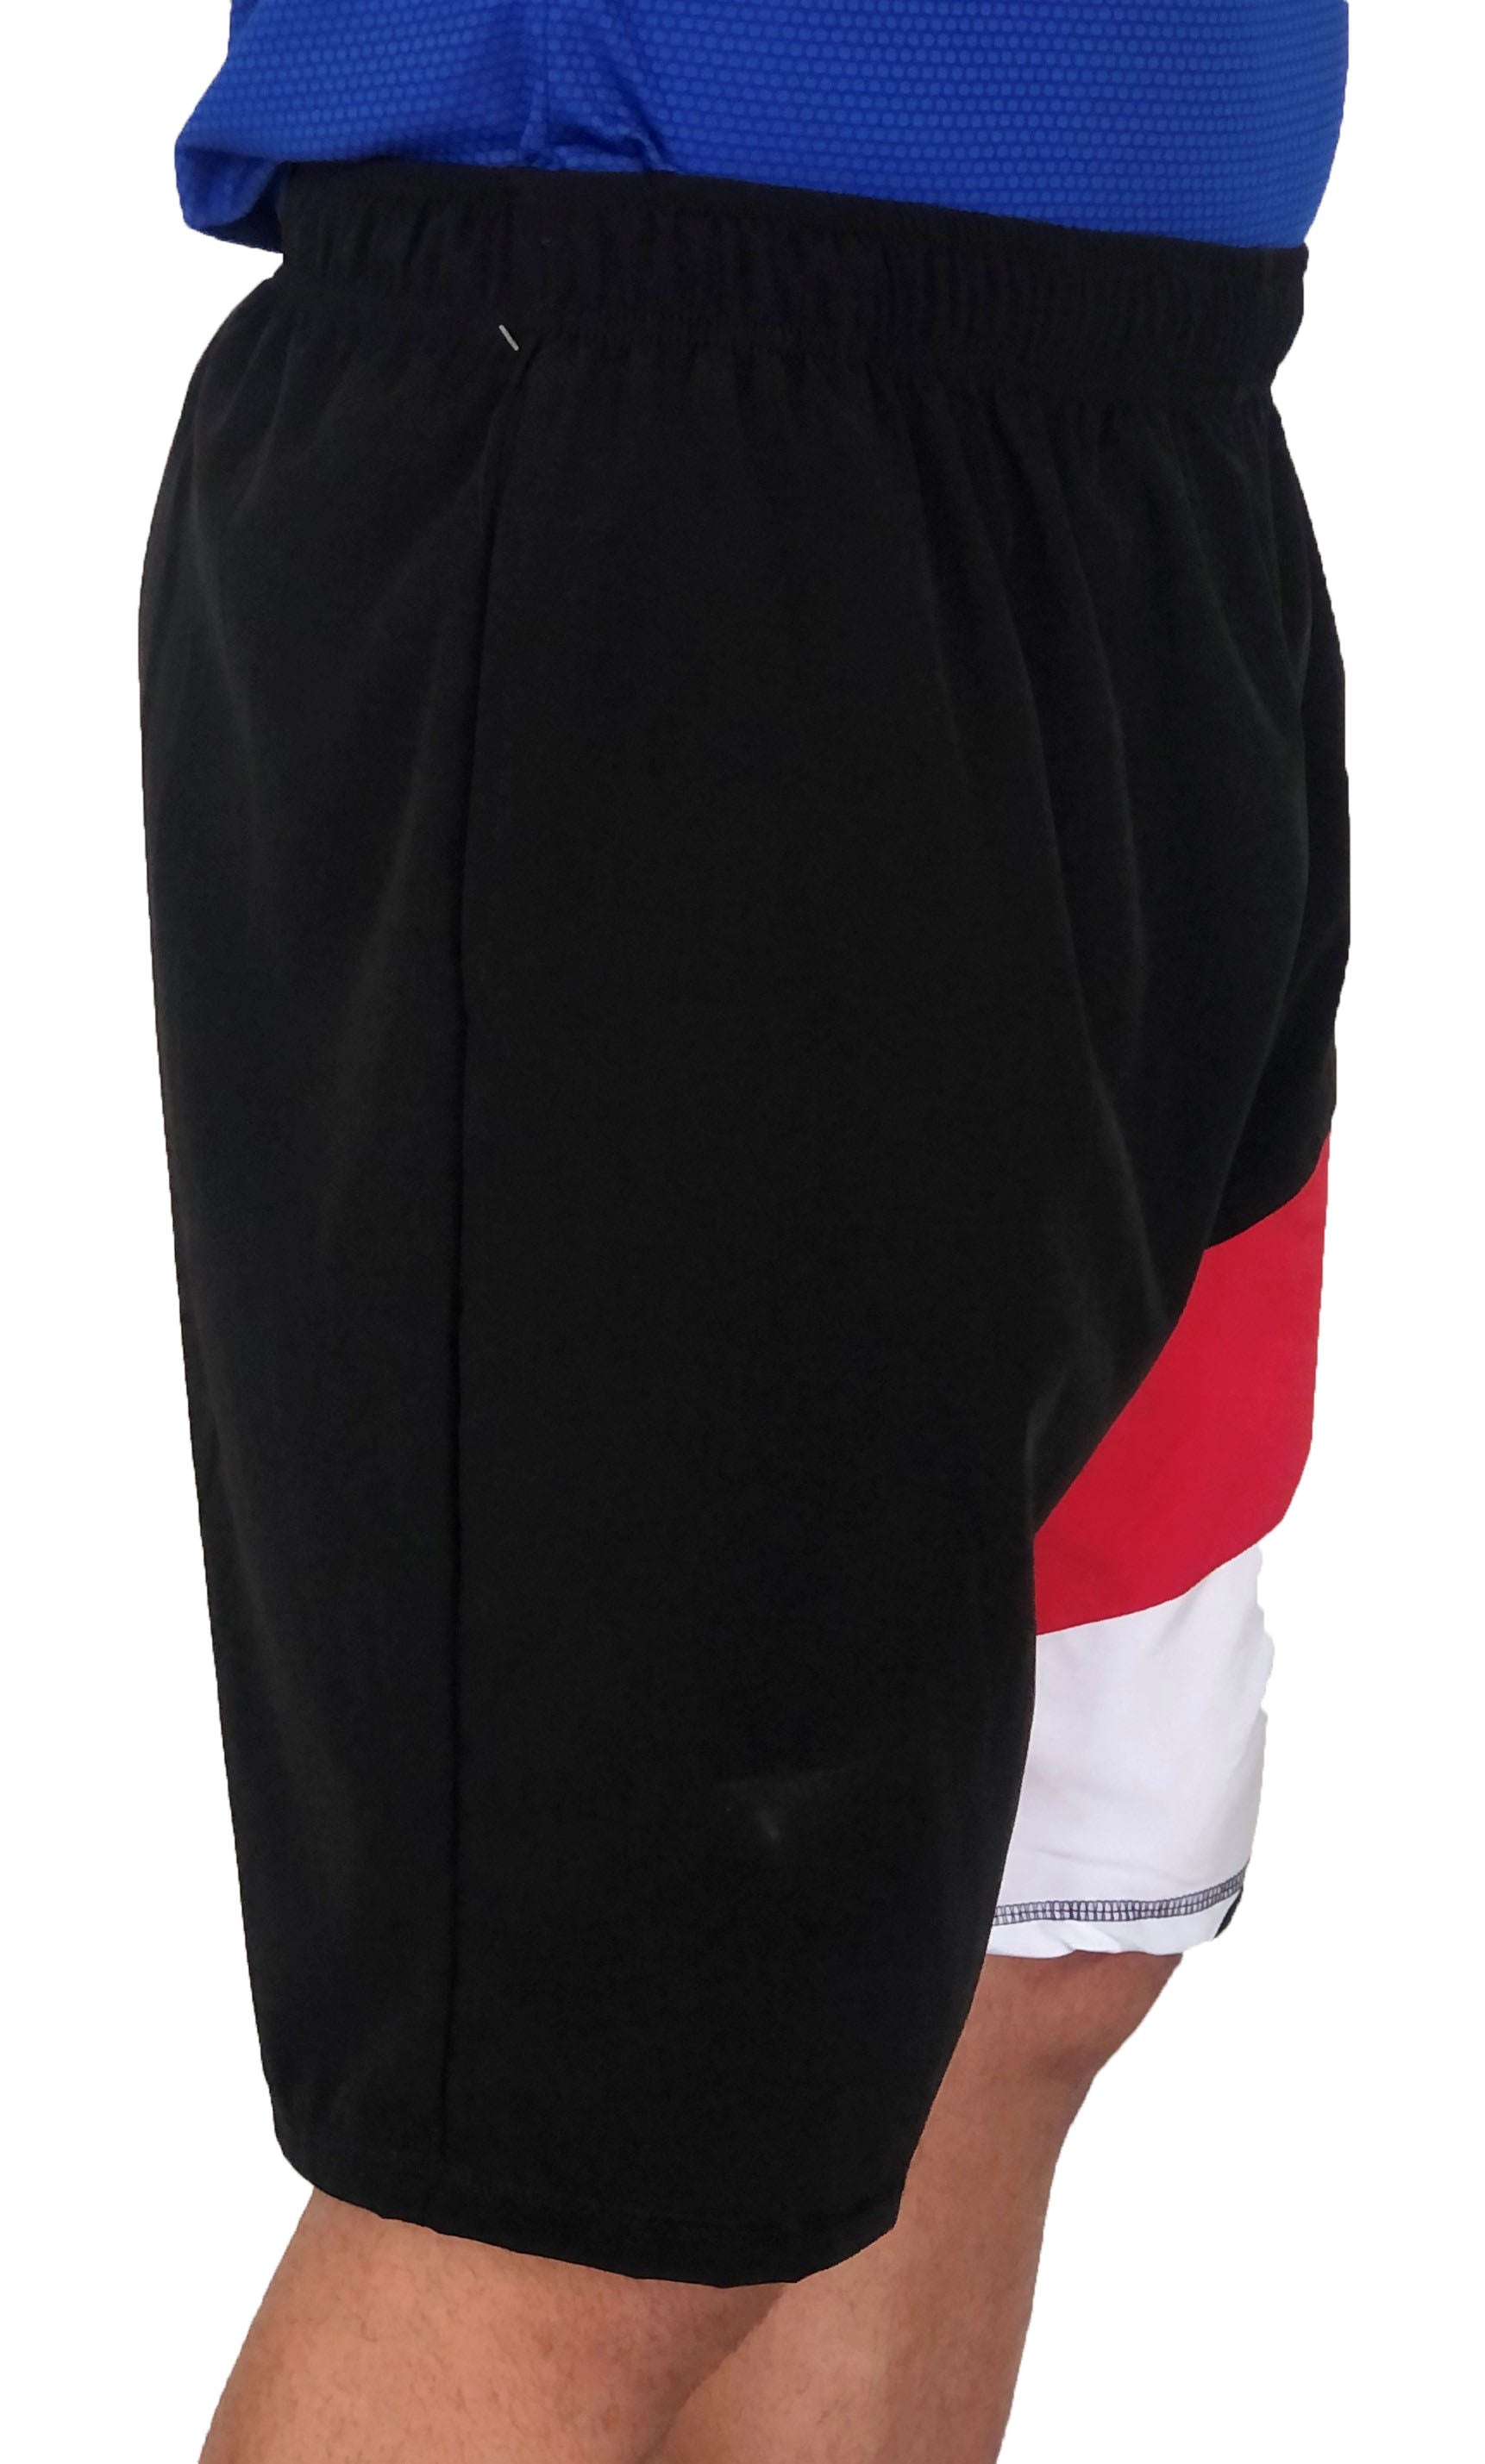 Short deportivo negro bloques rojo con blanco